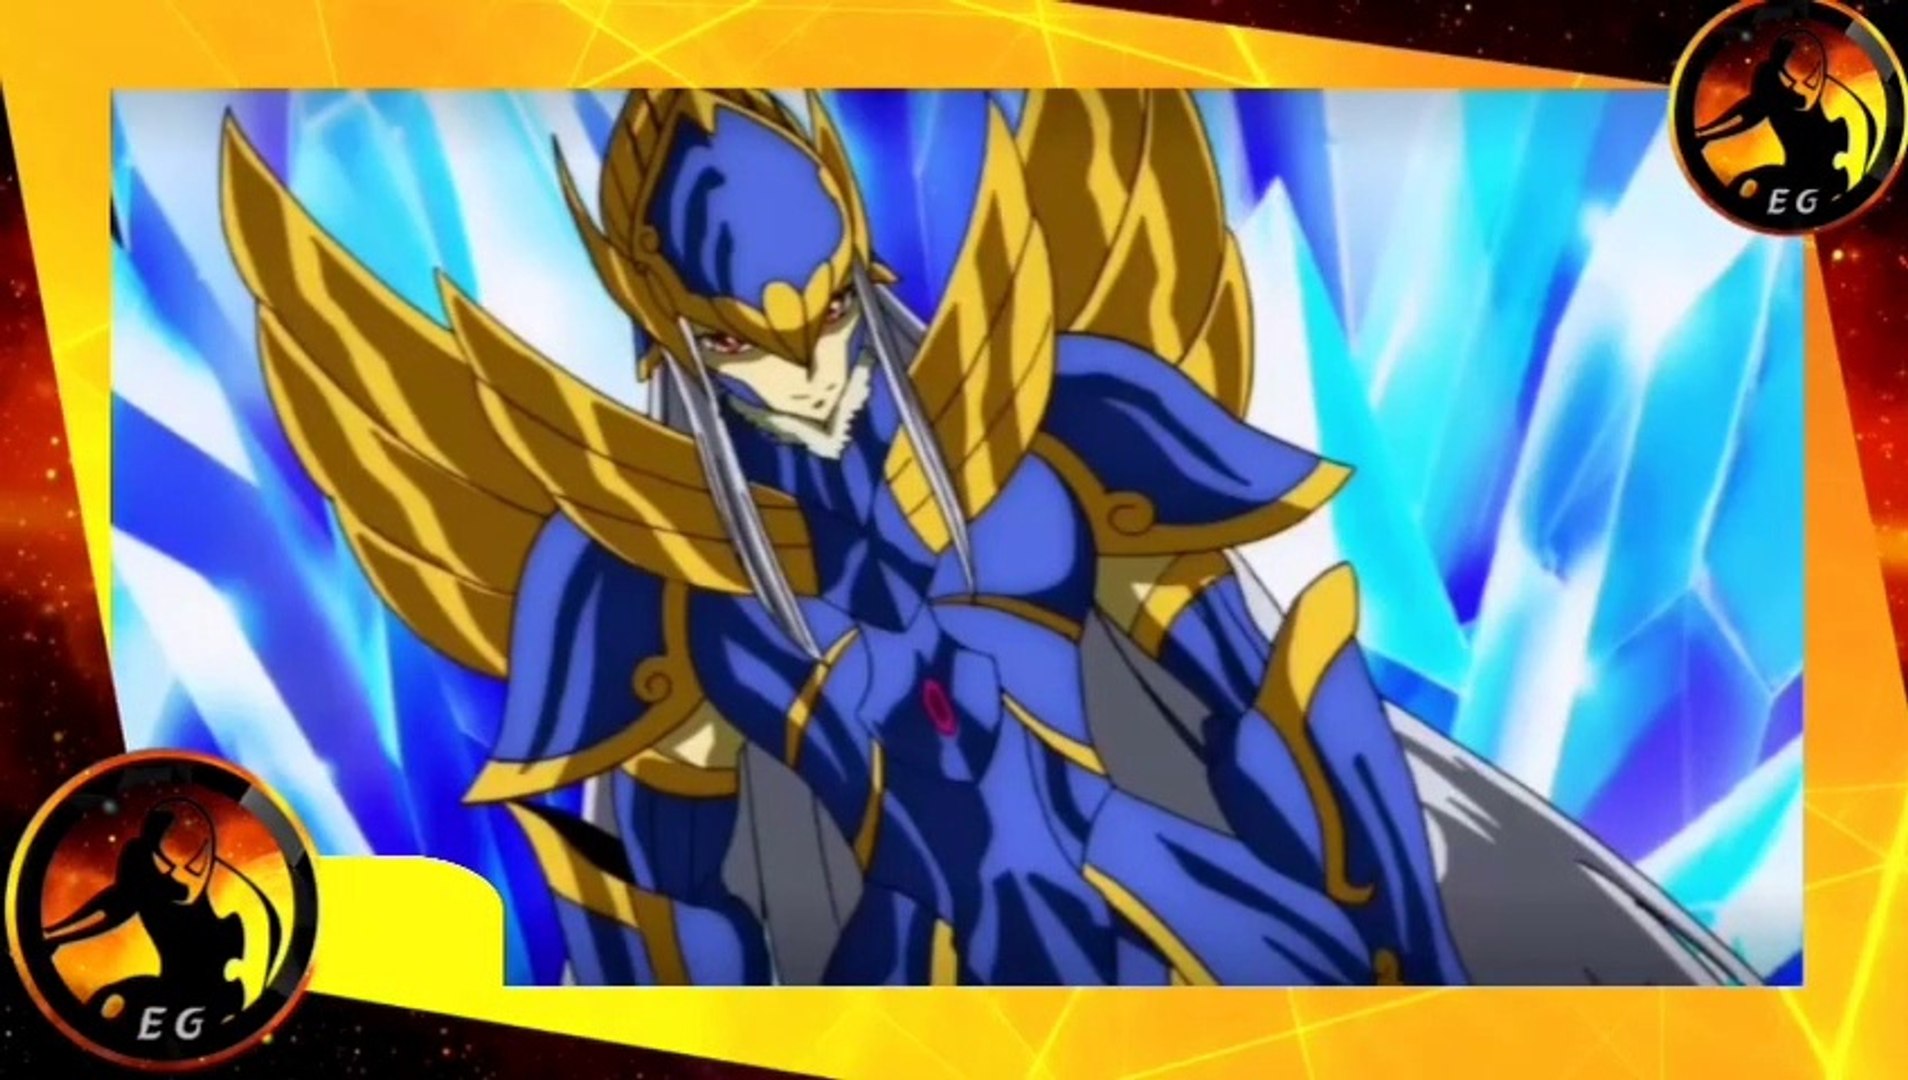 Saint Seiya Soul Of Gold - ¡Enfrentamiento! Caballero de Oro contra  Caballero de Oro - Capitulo 3 (Latino) - Vídeo Dailymotion